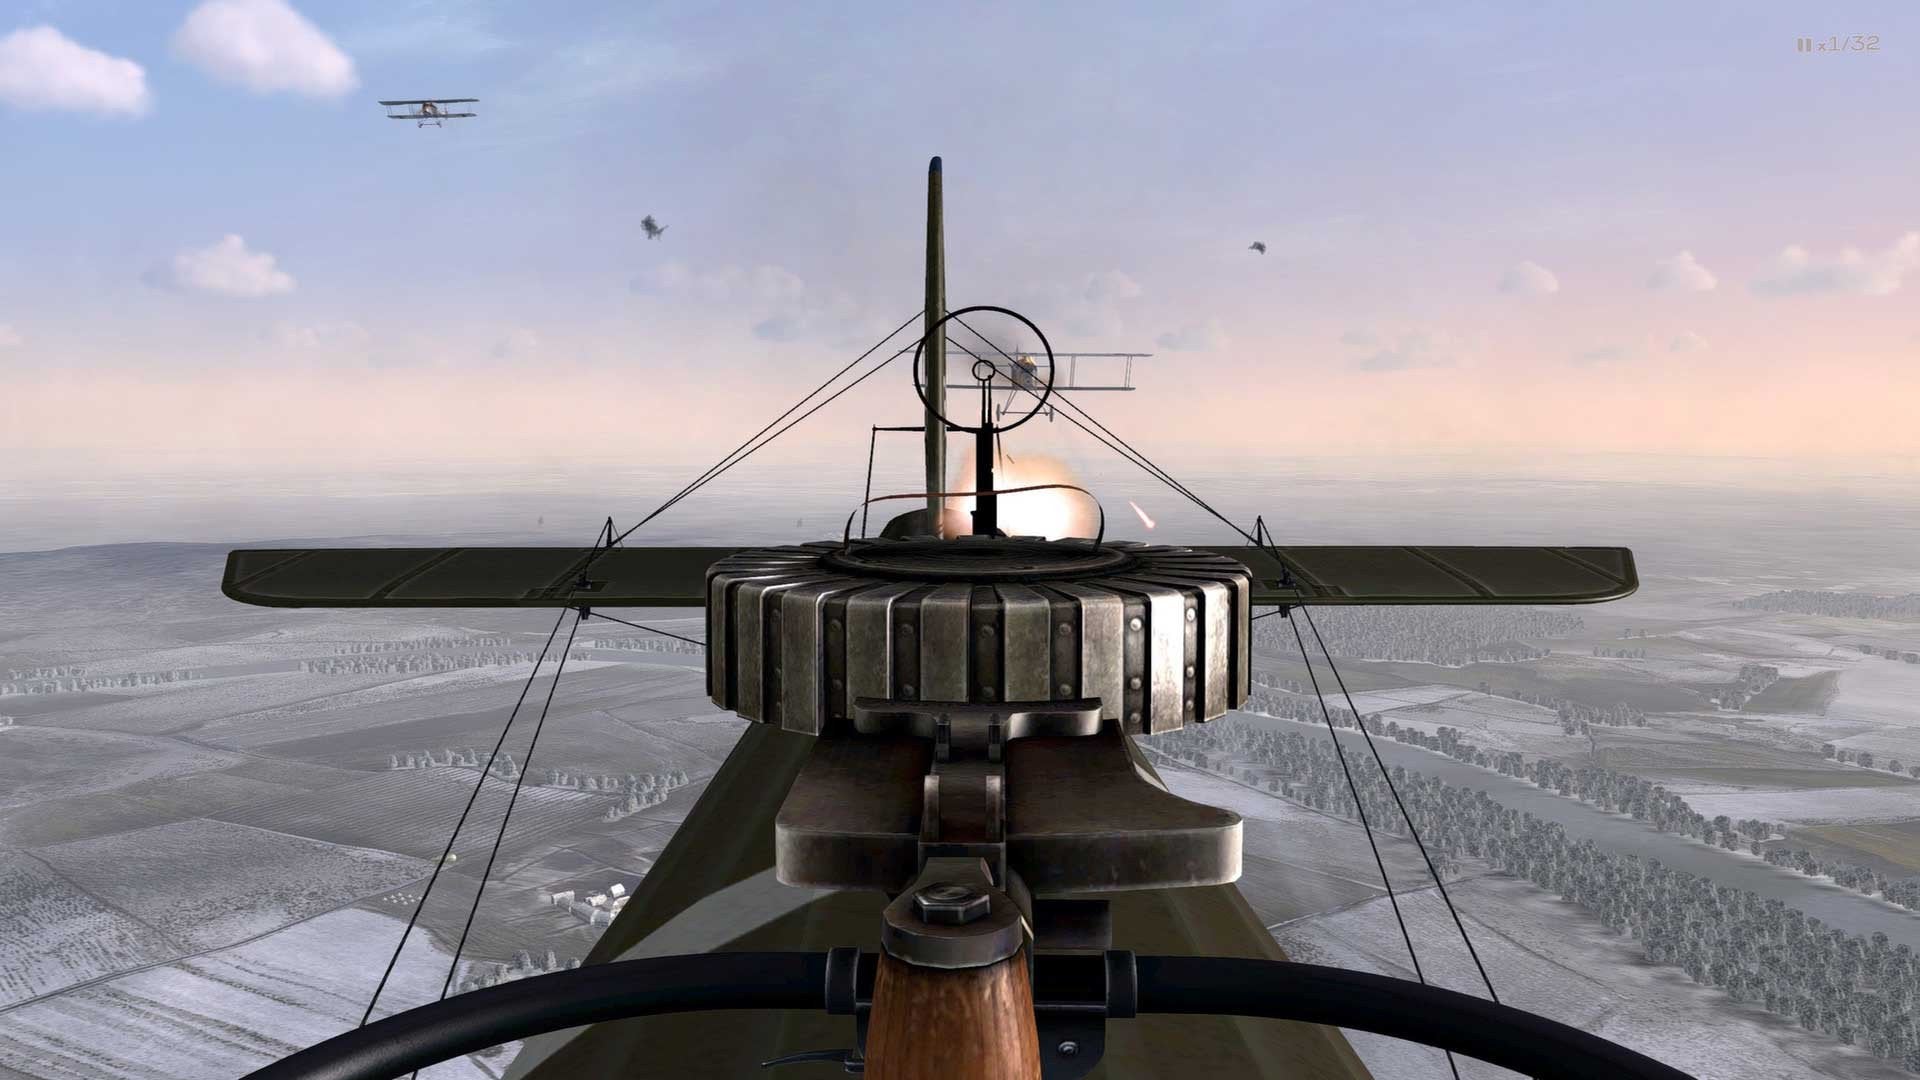 Jogando Rise of Flight - Simulador de Aviões da Primeira Guerra Mundial  Hardcore!! 